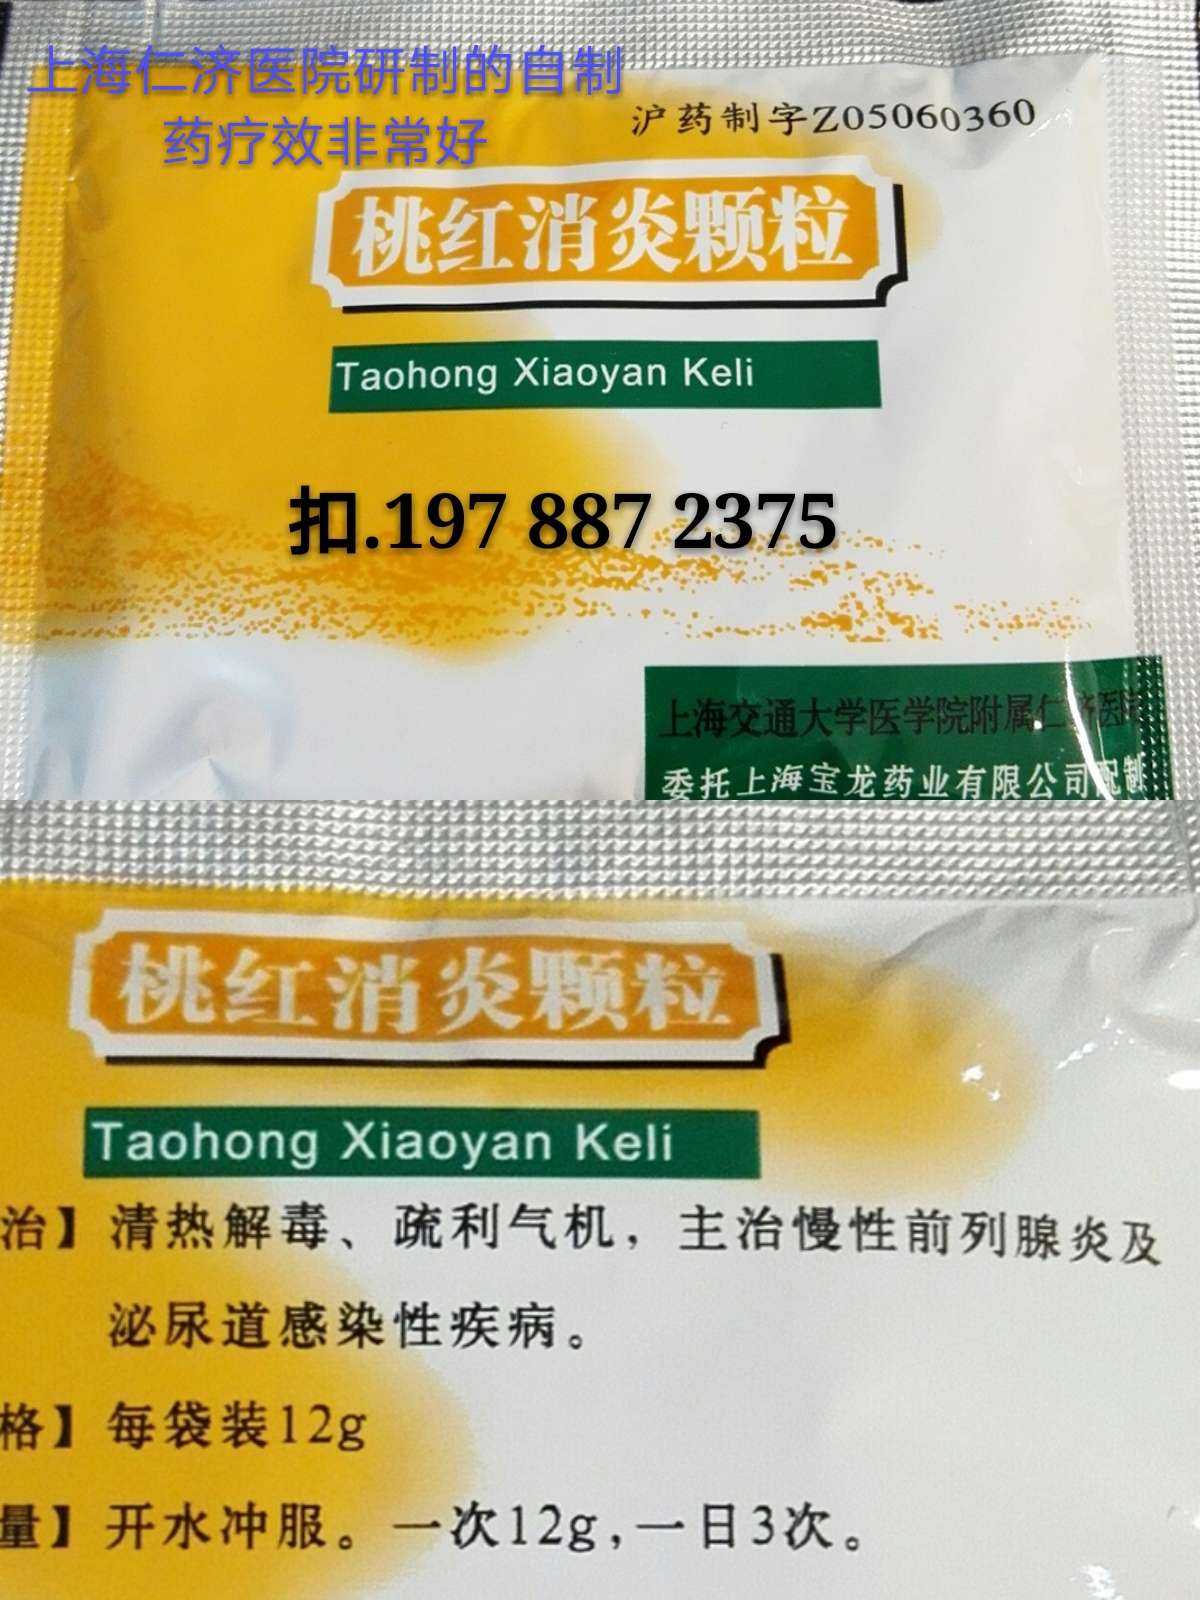 桃红消炎颗粒,上海仁济医院研制的自制药,主治慢性前列腺炎及泌尿道